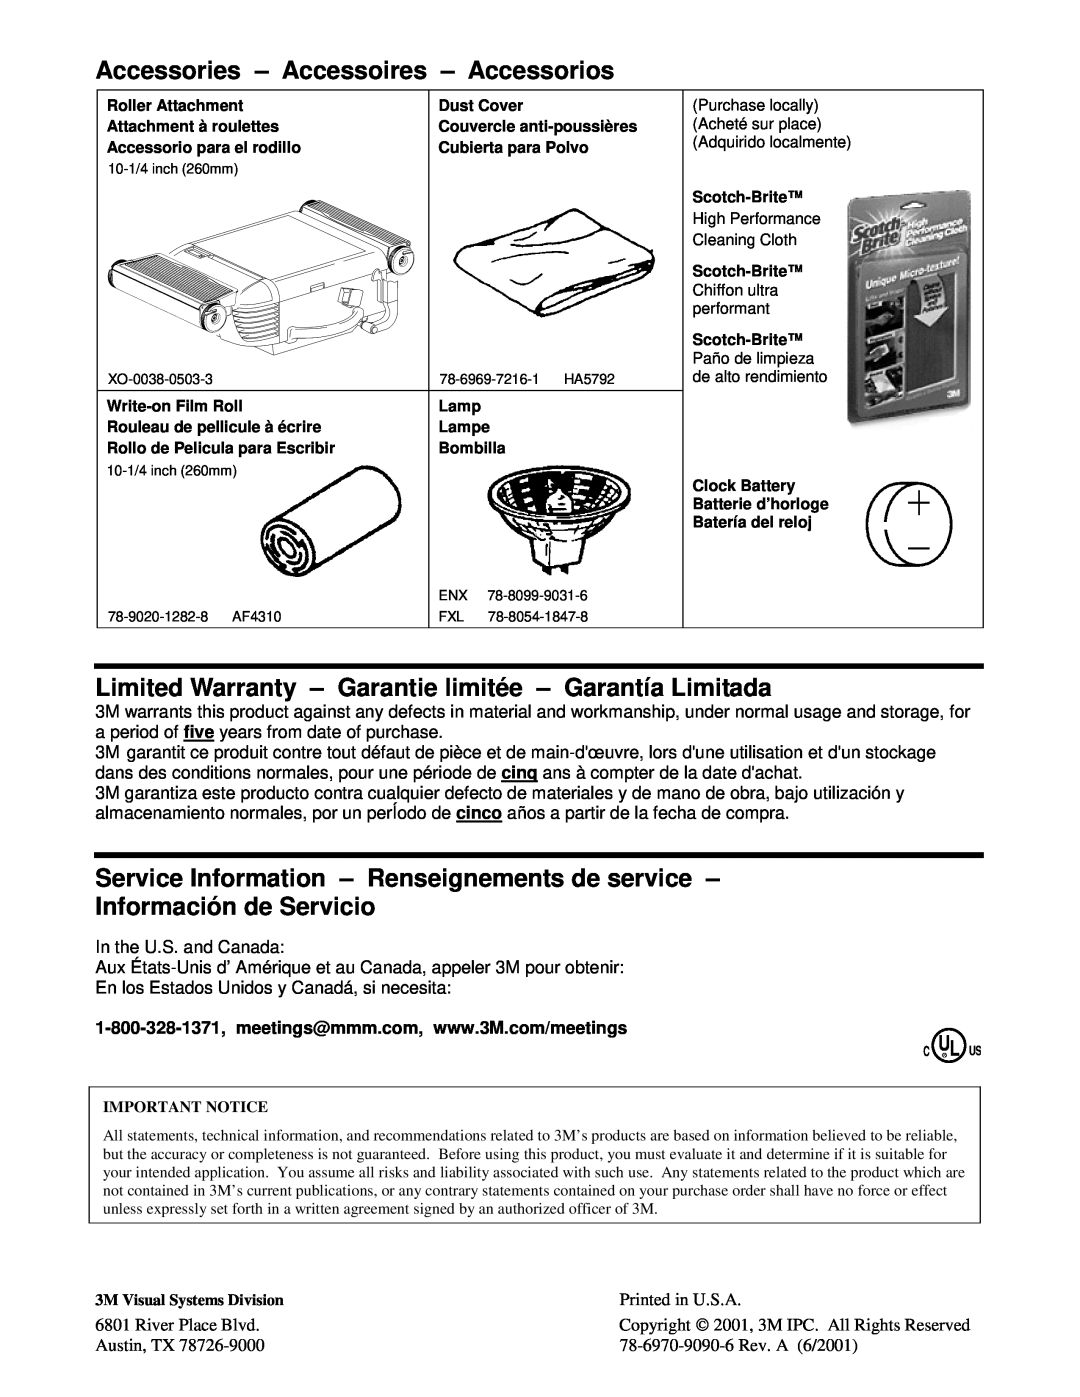 3M 1800 Series manual Accessories - Accessoires - Accessorios, Limited Warranty - Garantie limitée - Garantía Limitada 